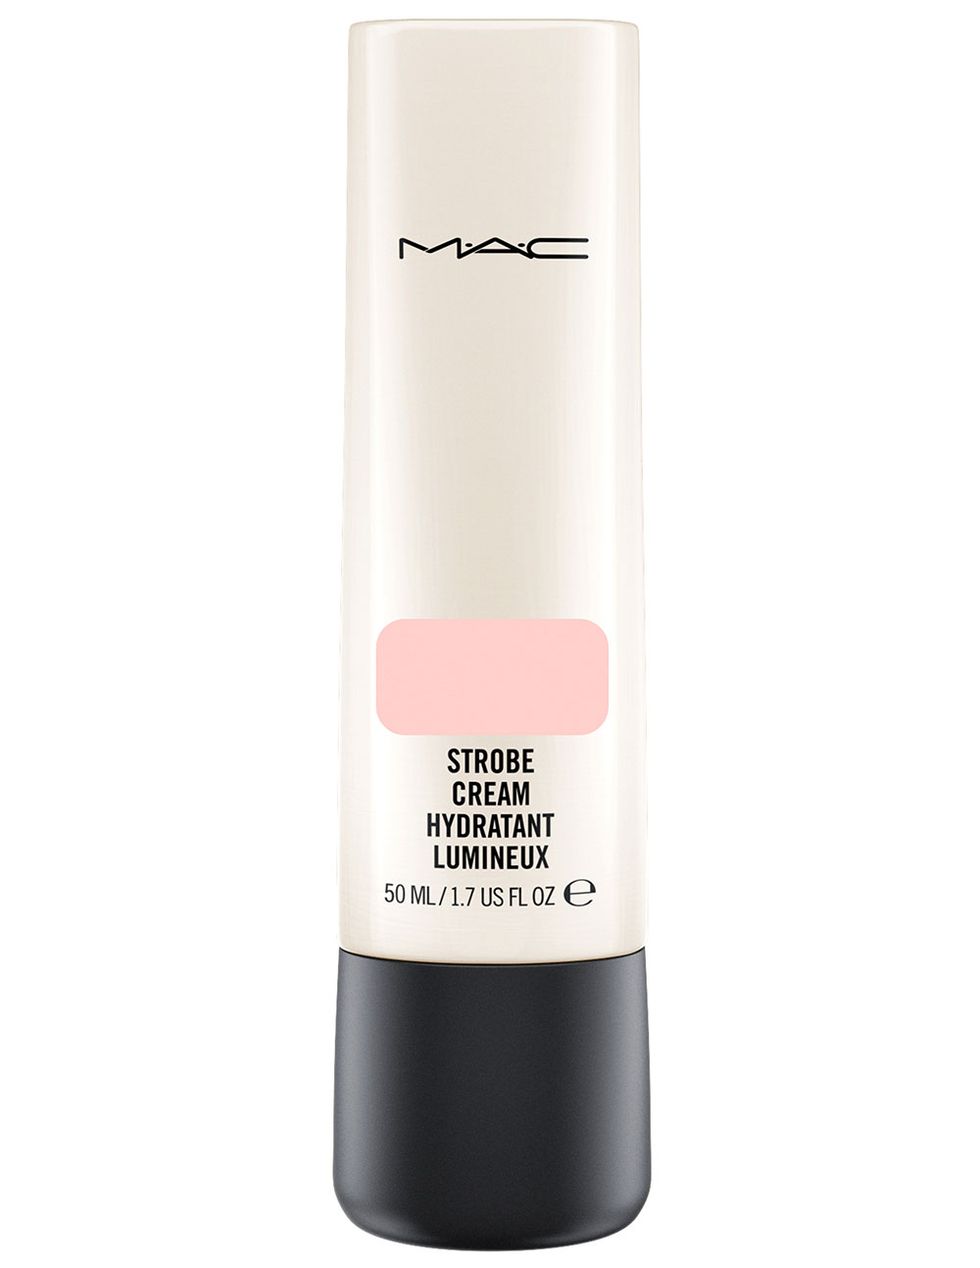 M.A.C lanza su colección más bonita- M.A.C. Cosmetics saca una línea nueva  de maquillaje preciosa